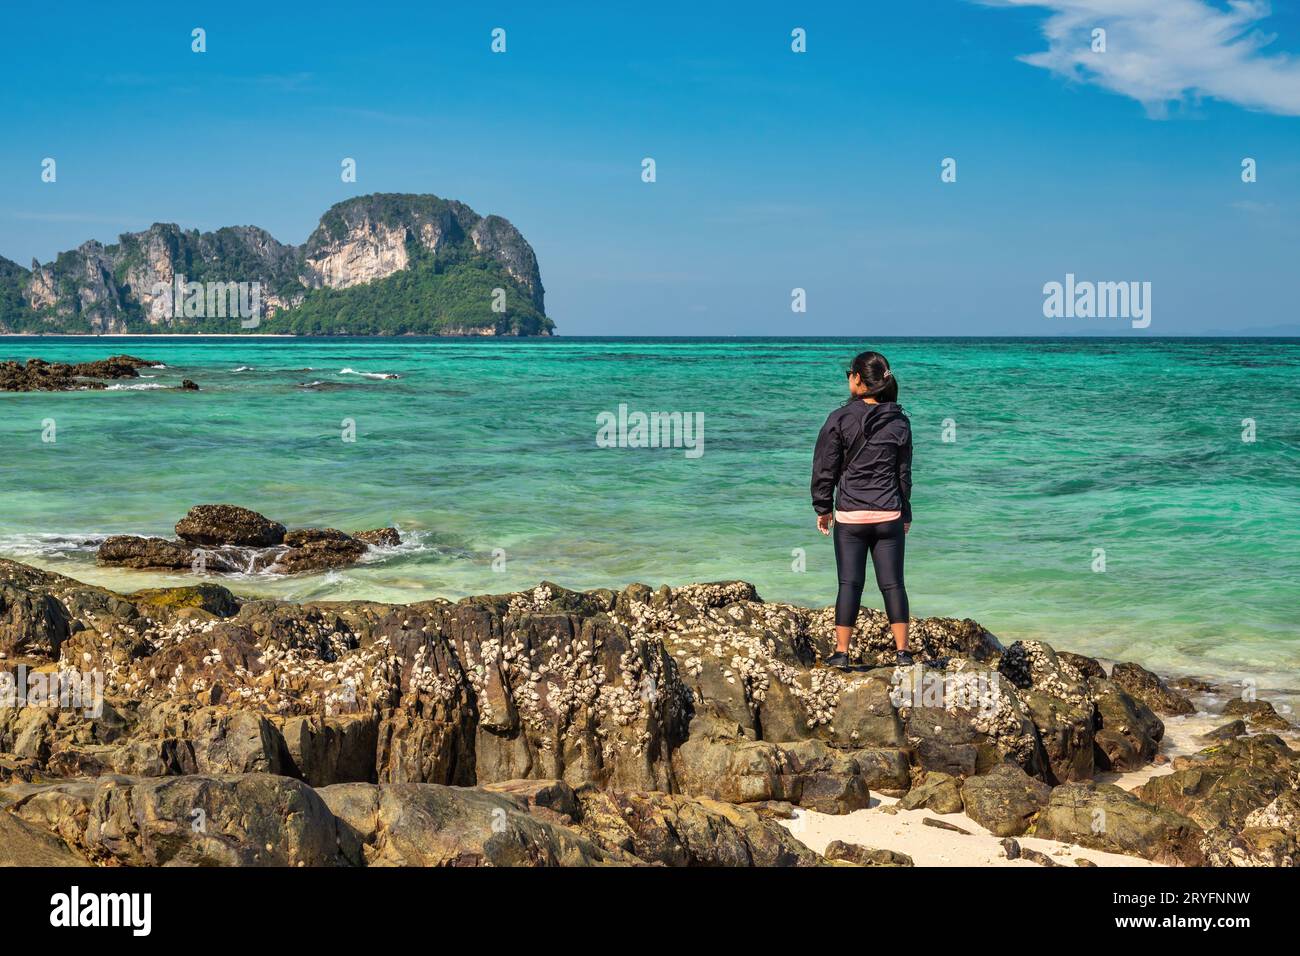 Vue sur les îles tropicales avec une femme touriste regardant l'eau de mer bleu océan et la plage de sable blanc à Bam Banque D'Images